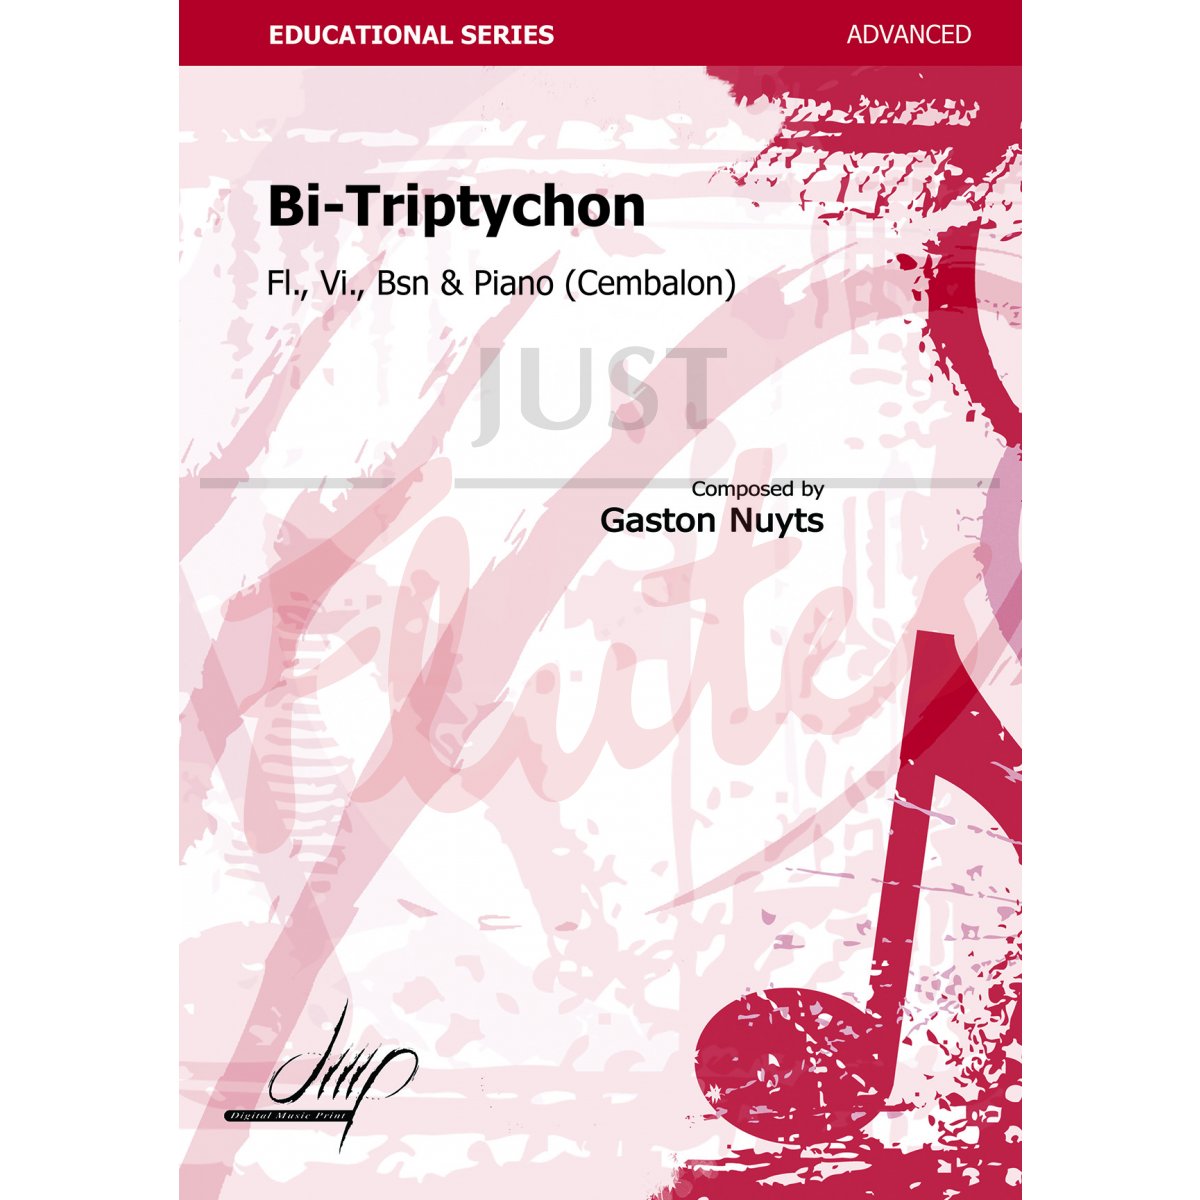 Bi-Triptychon